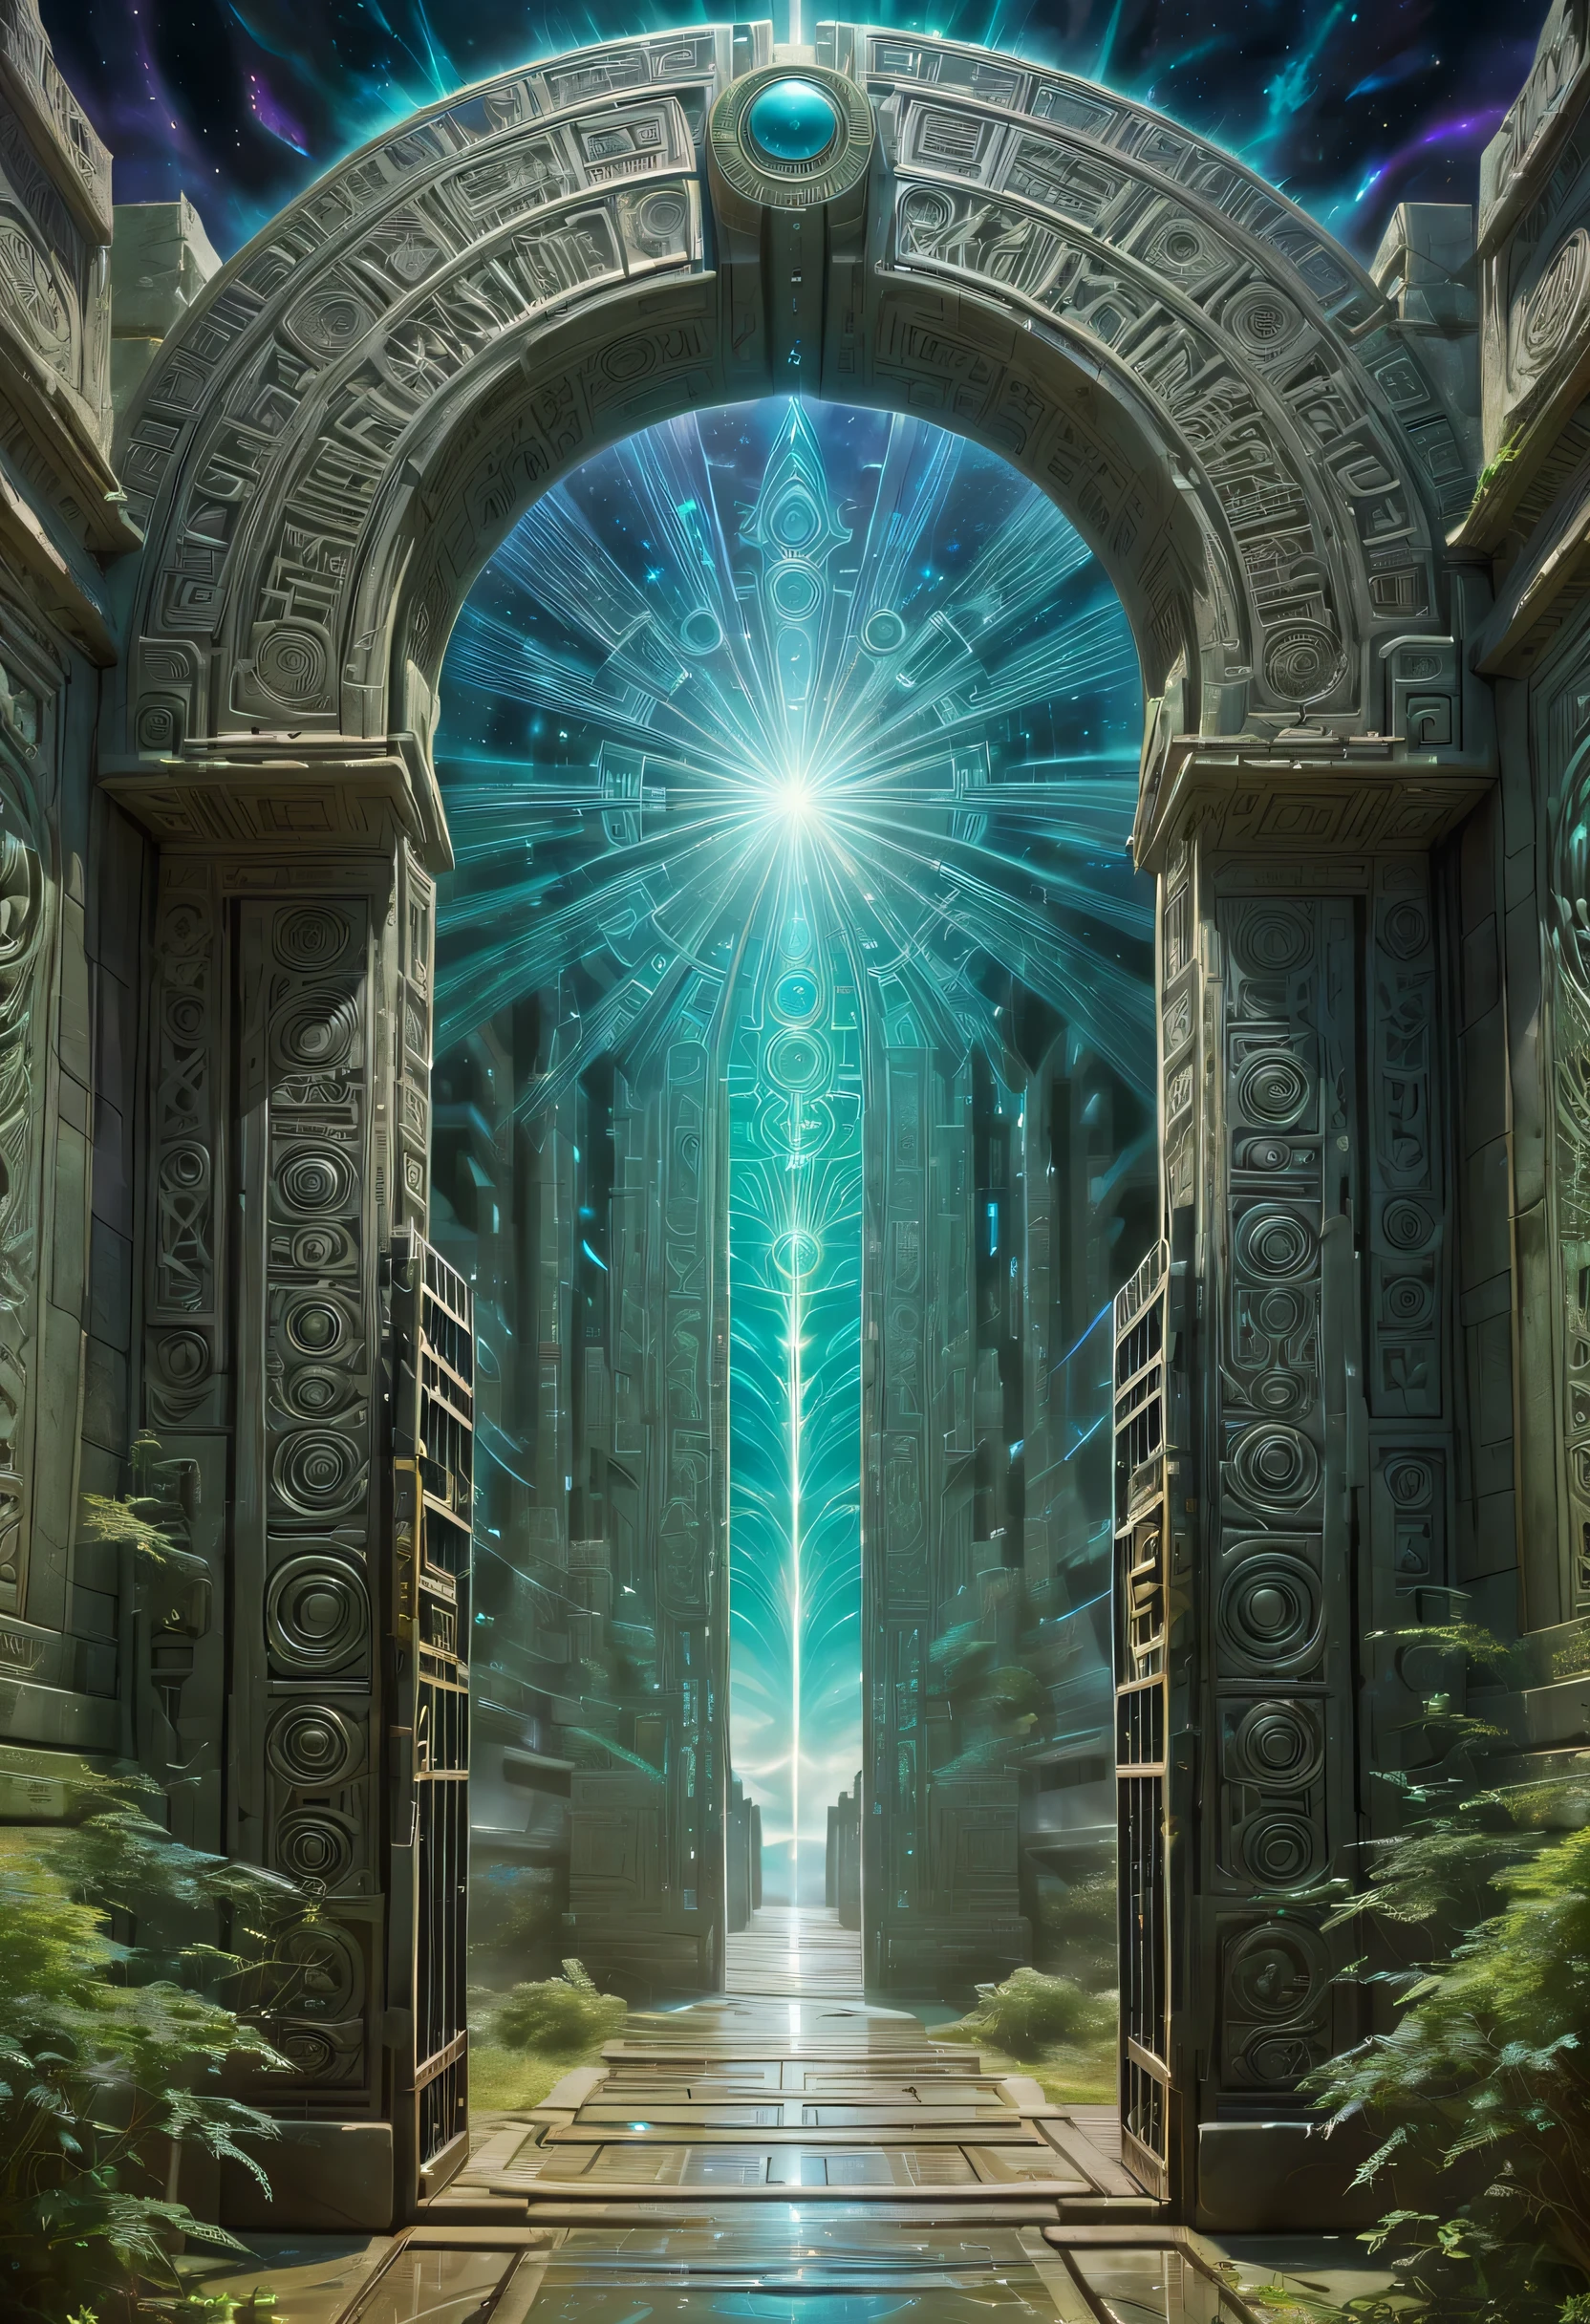 アート：mooncryptowow, 宇宙の中心で, 対称, 忘れ去られた時間と空間の入り口が出現, ゼラチン状の壁には異星人の言語記号が刻まれている, 門に落雷, 神の光線,